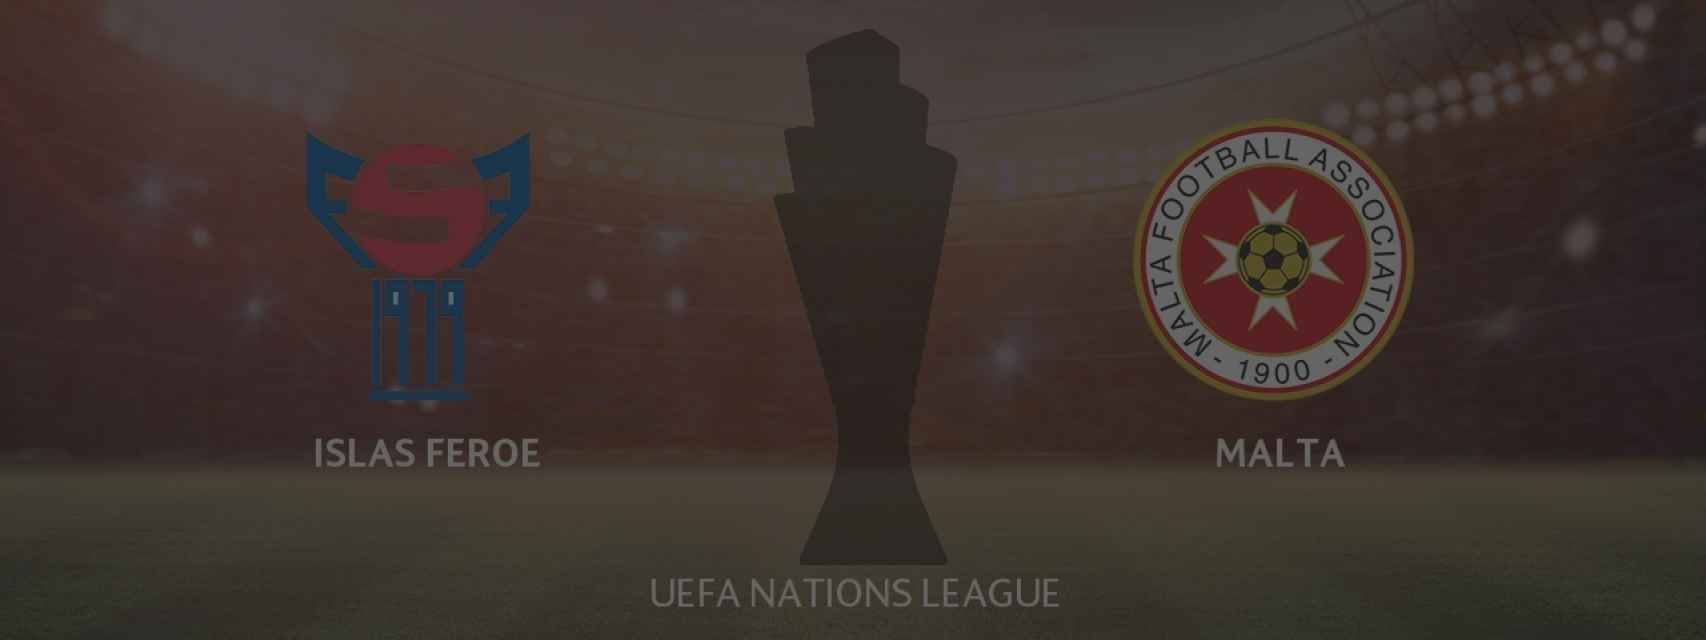 Islas Feroe - Malta, UEFA Nations League